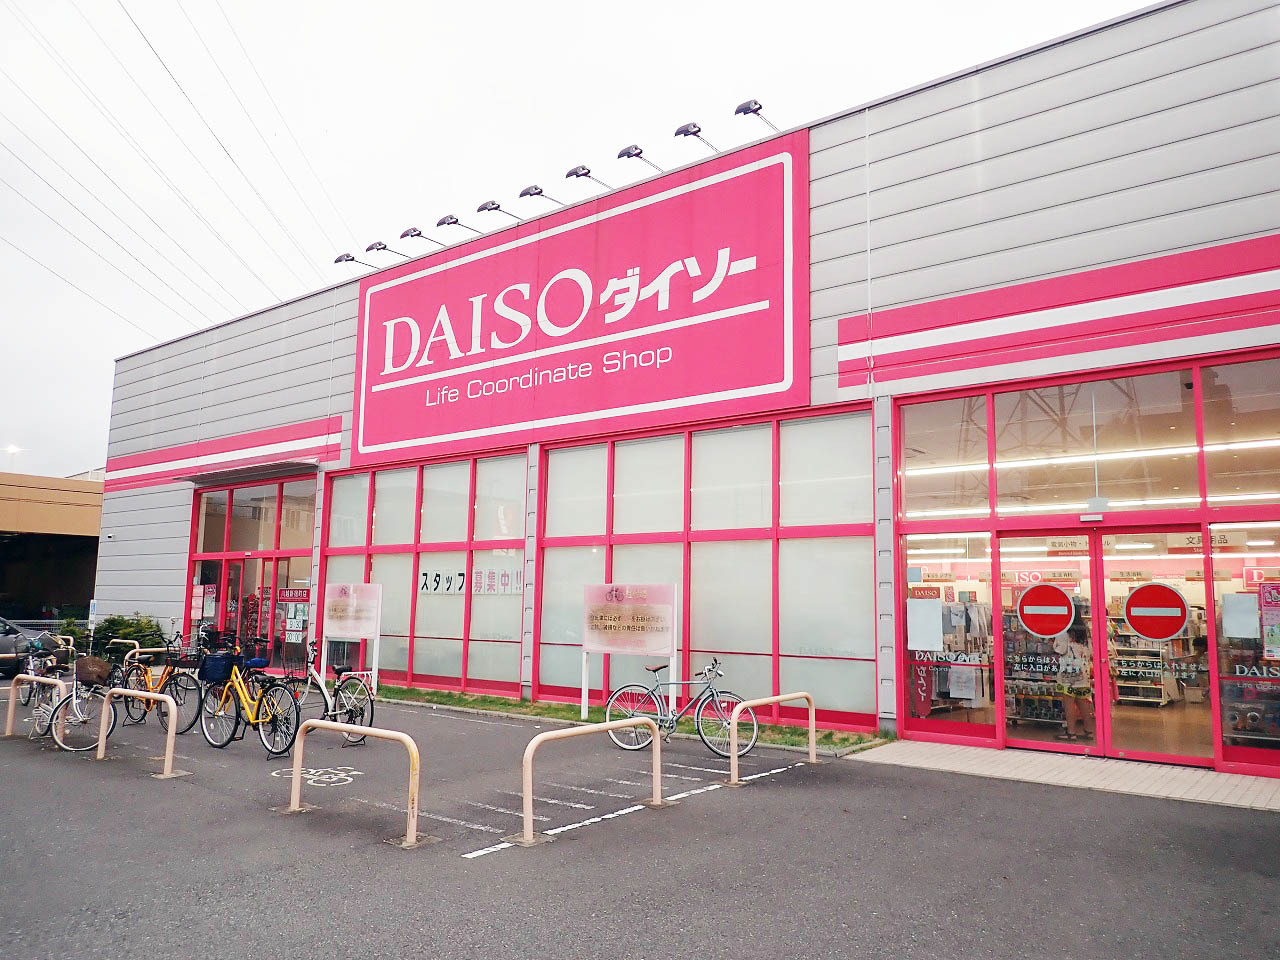 私は「ダイソー」の川越新宿町店に足を運びました。こちらは売り場面積がとても広い店舗です